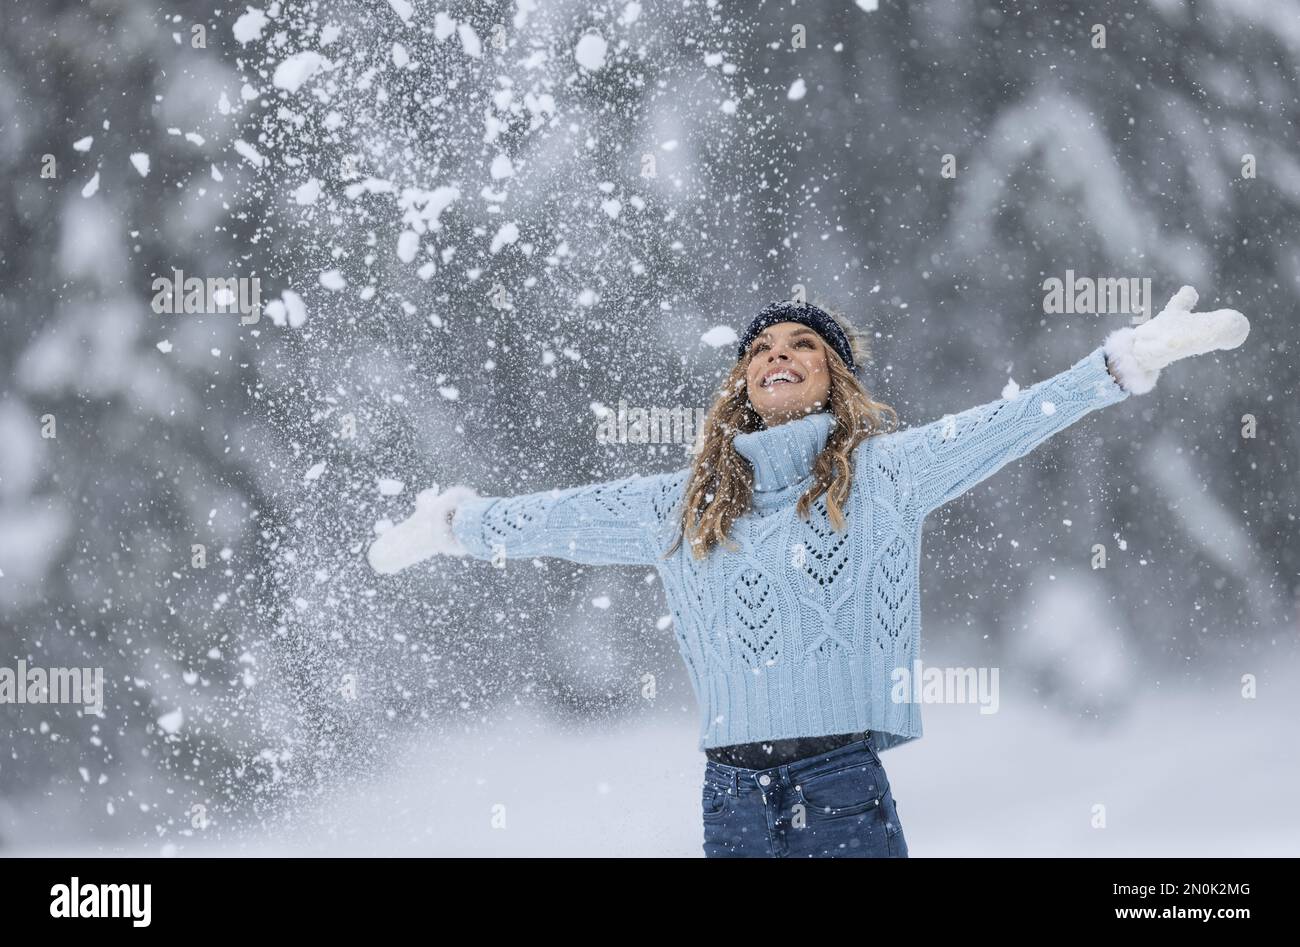 Mit weit geöffneten Armen genießt eine Frau in blauem Pullover, weißen Handschuhen, Schal und Hut an einem verschneiten Wintertag frische Luft. Stockfoto